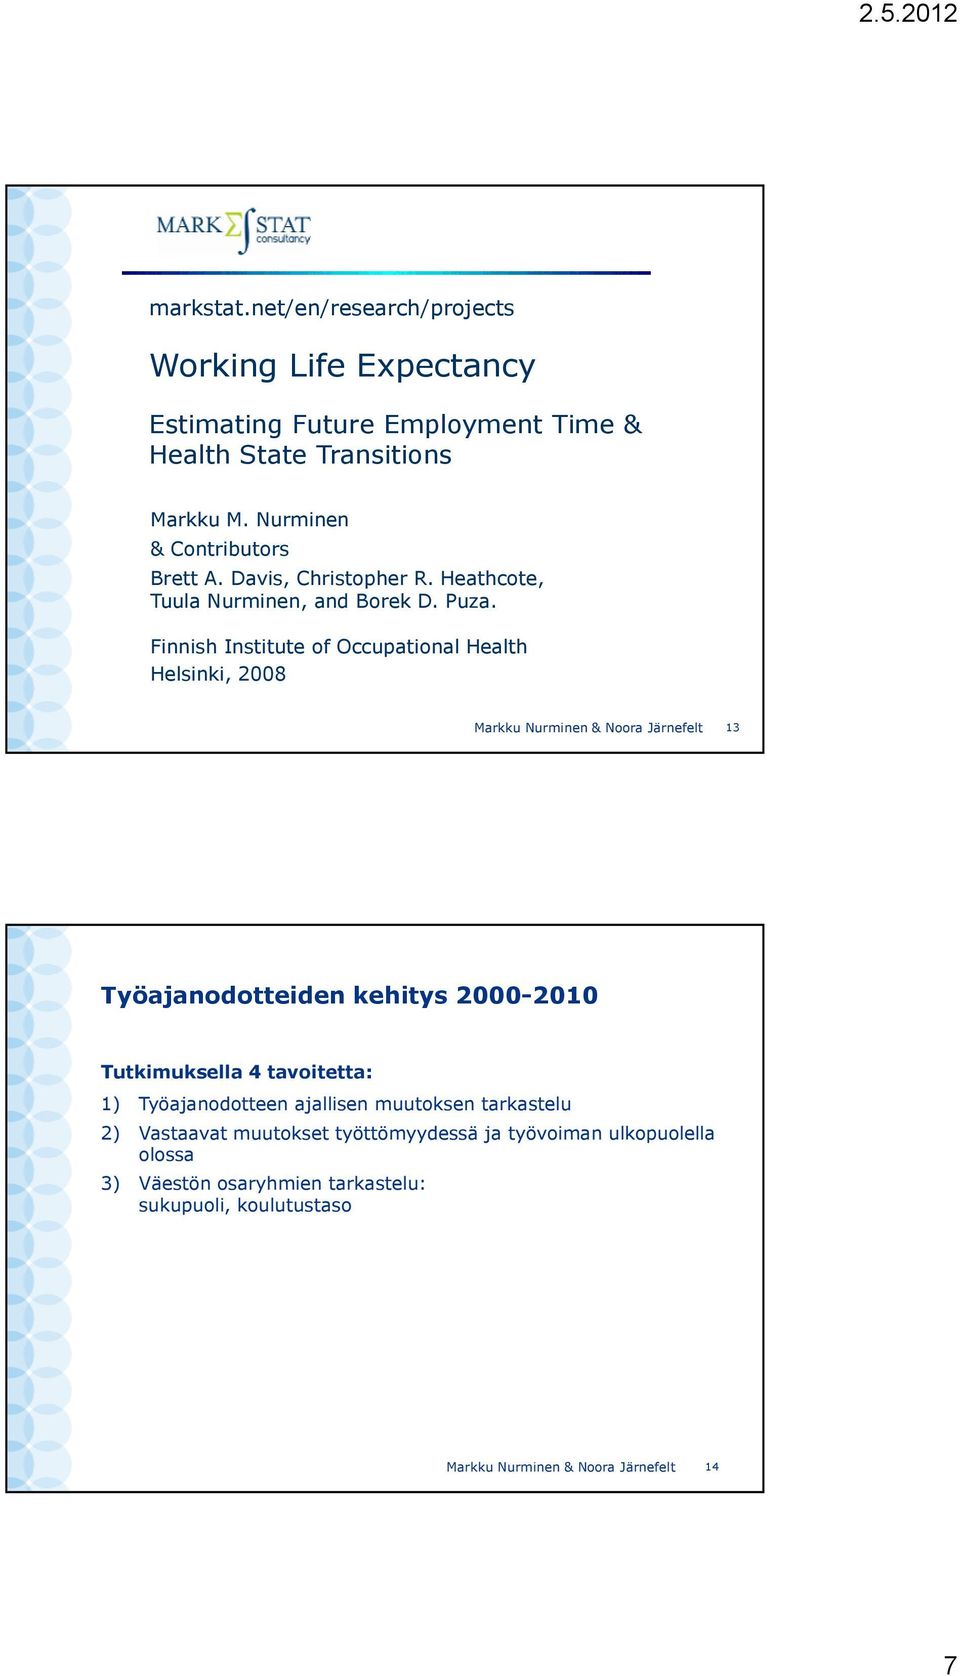 Finnish Institute of Occupational Health Helsinki, 2008 Markku Nurminen & Noora Järnefelt 13 Työajanodotteiden kehitys 2000-2010 Tutkimuksella 4